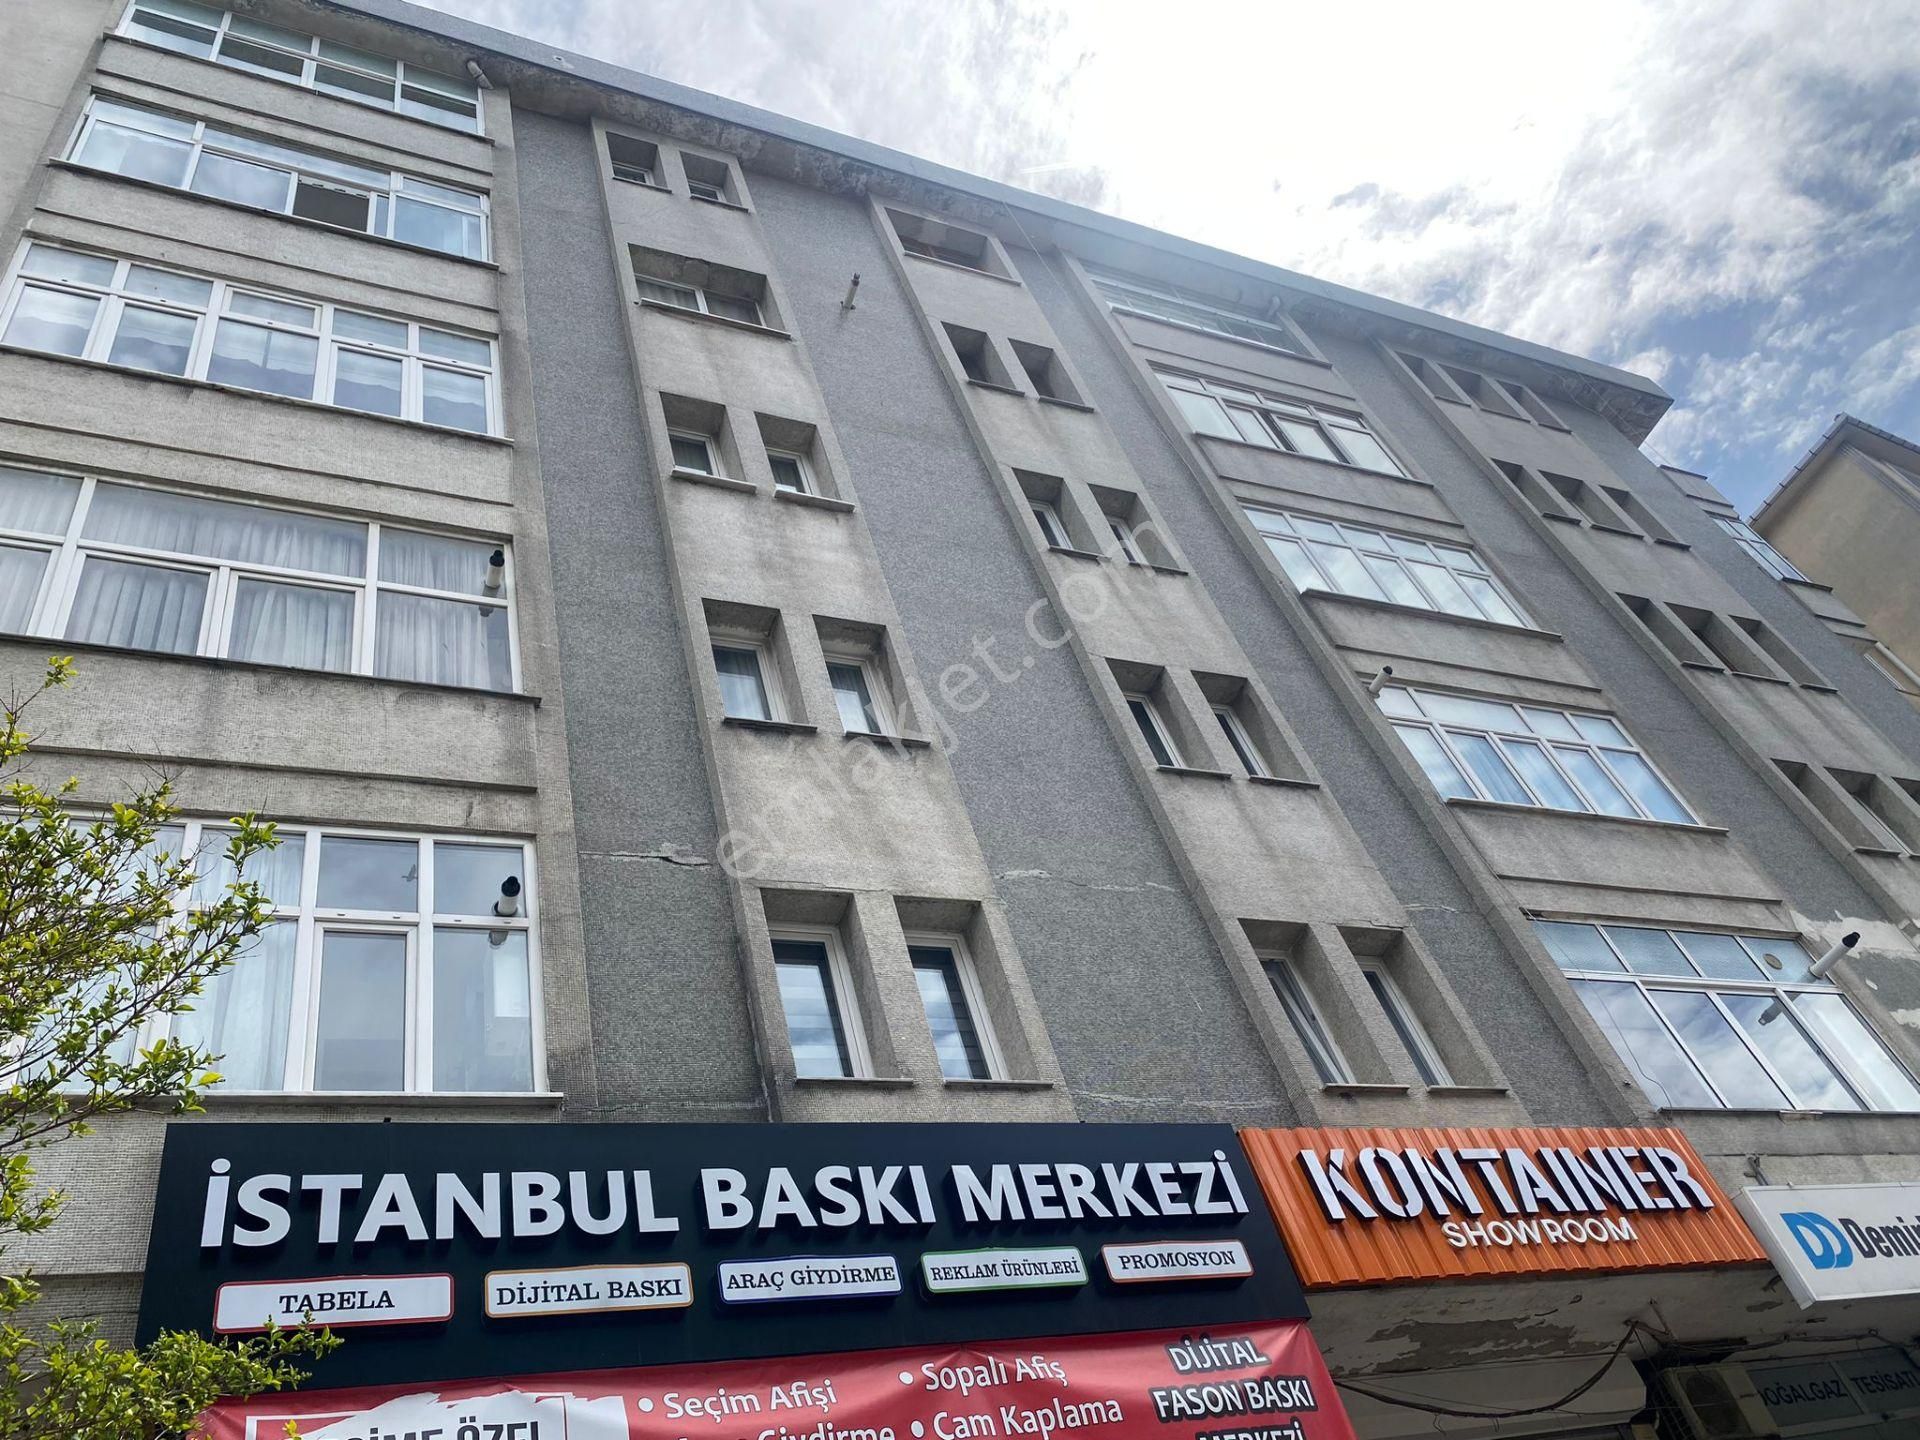 Güngören Haznedar Satılık Daire  Haznedar Marmara Caddesinde Asansörlü Binada 2+1 95 m2 arakat